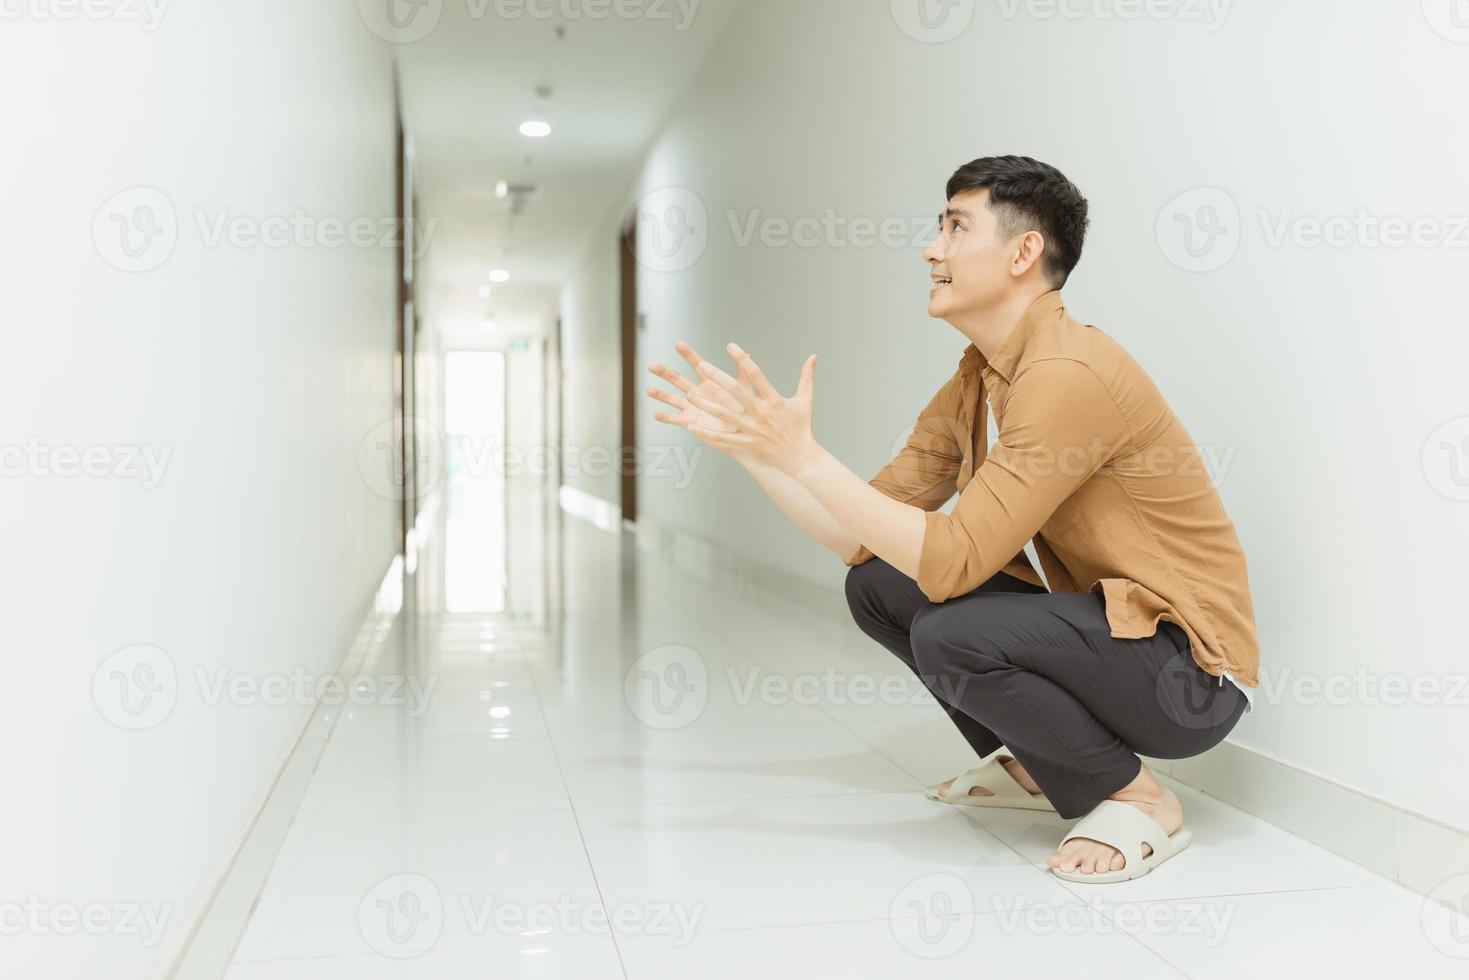 mulher deprimida e triste sentada no chão em um corredor. sutil. foto